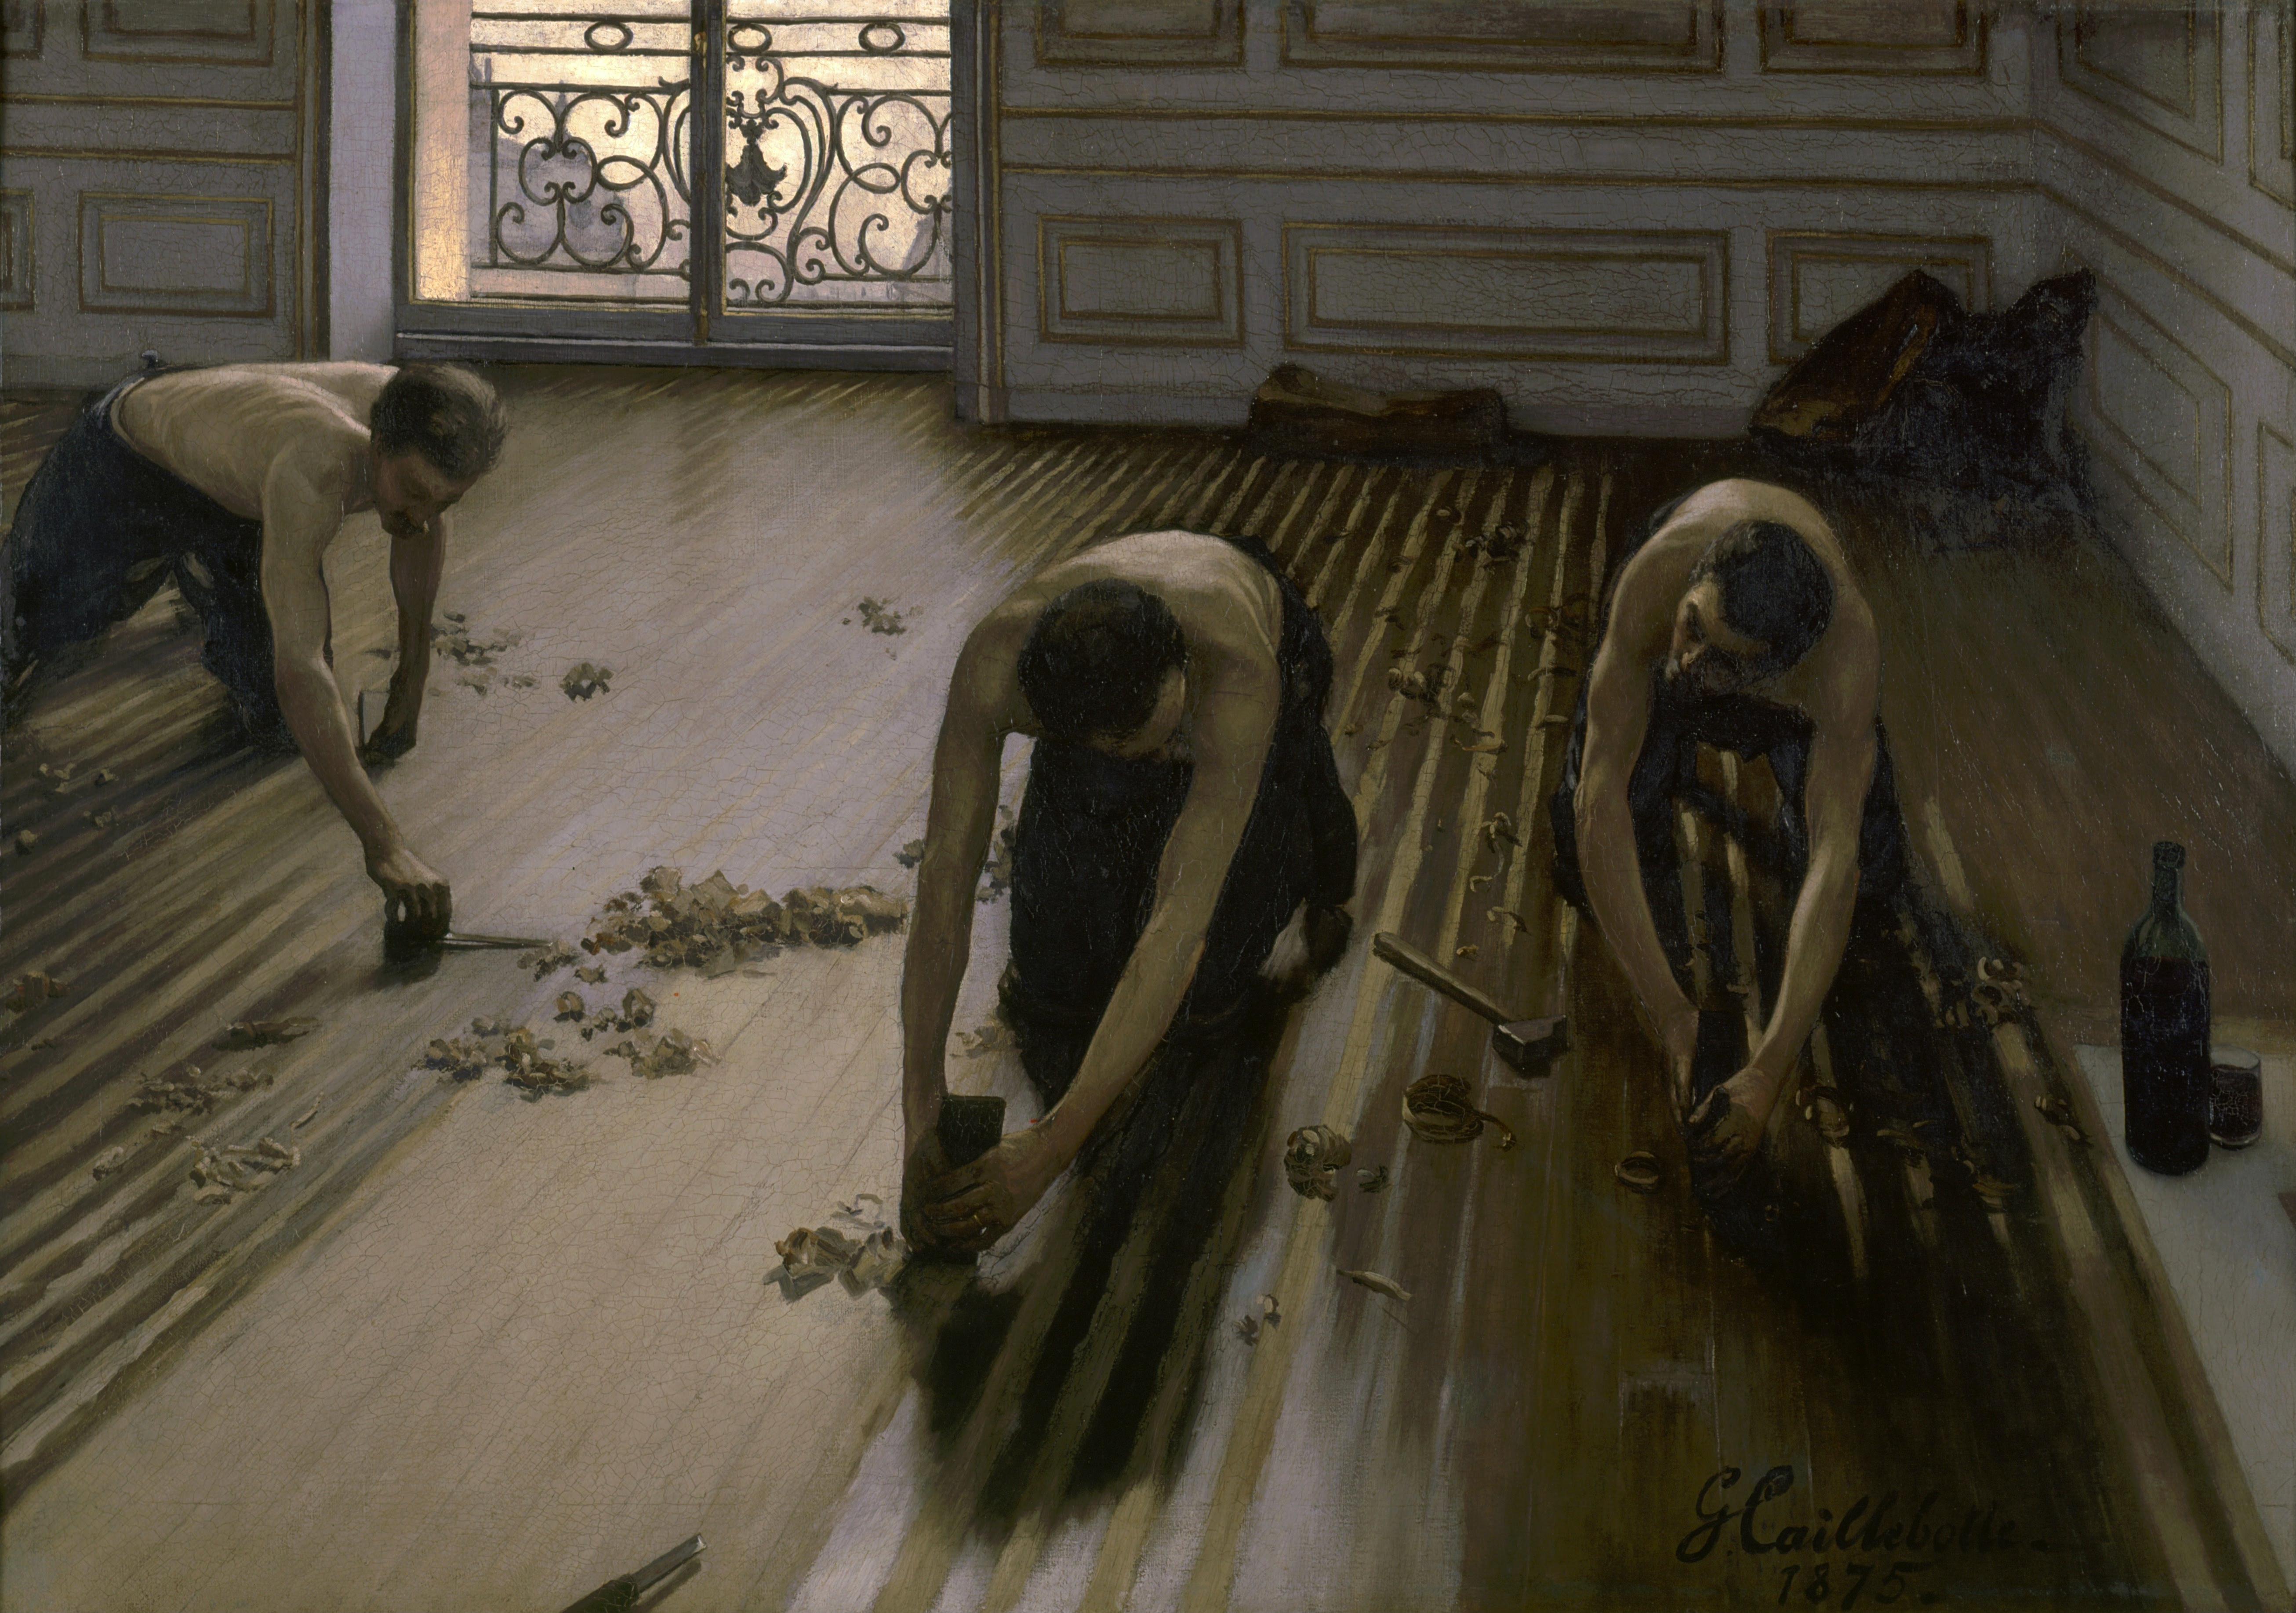 Les Racleurs de Sol by Gustave Caillebotte - 1875 - 102 x 146.5 cm Musée d'Orsay